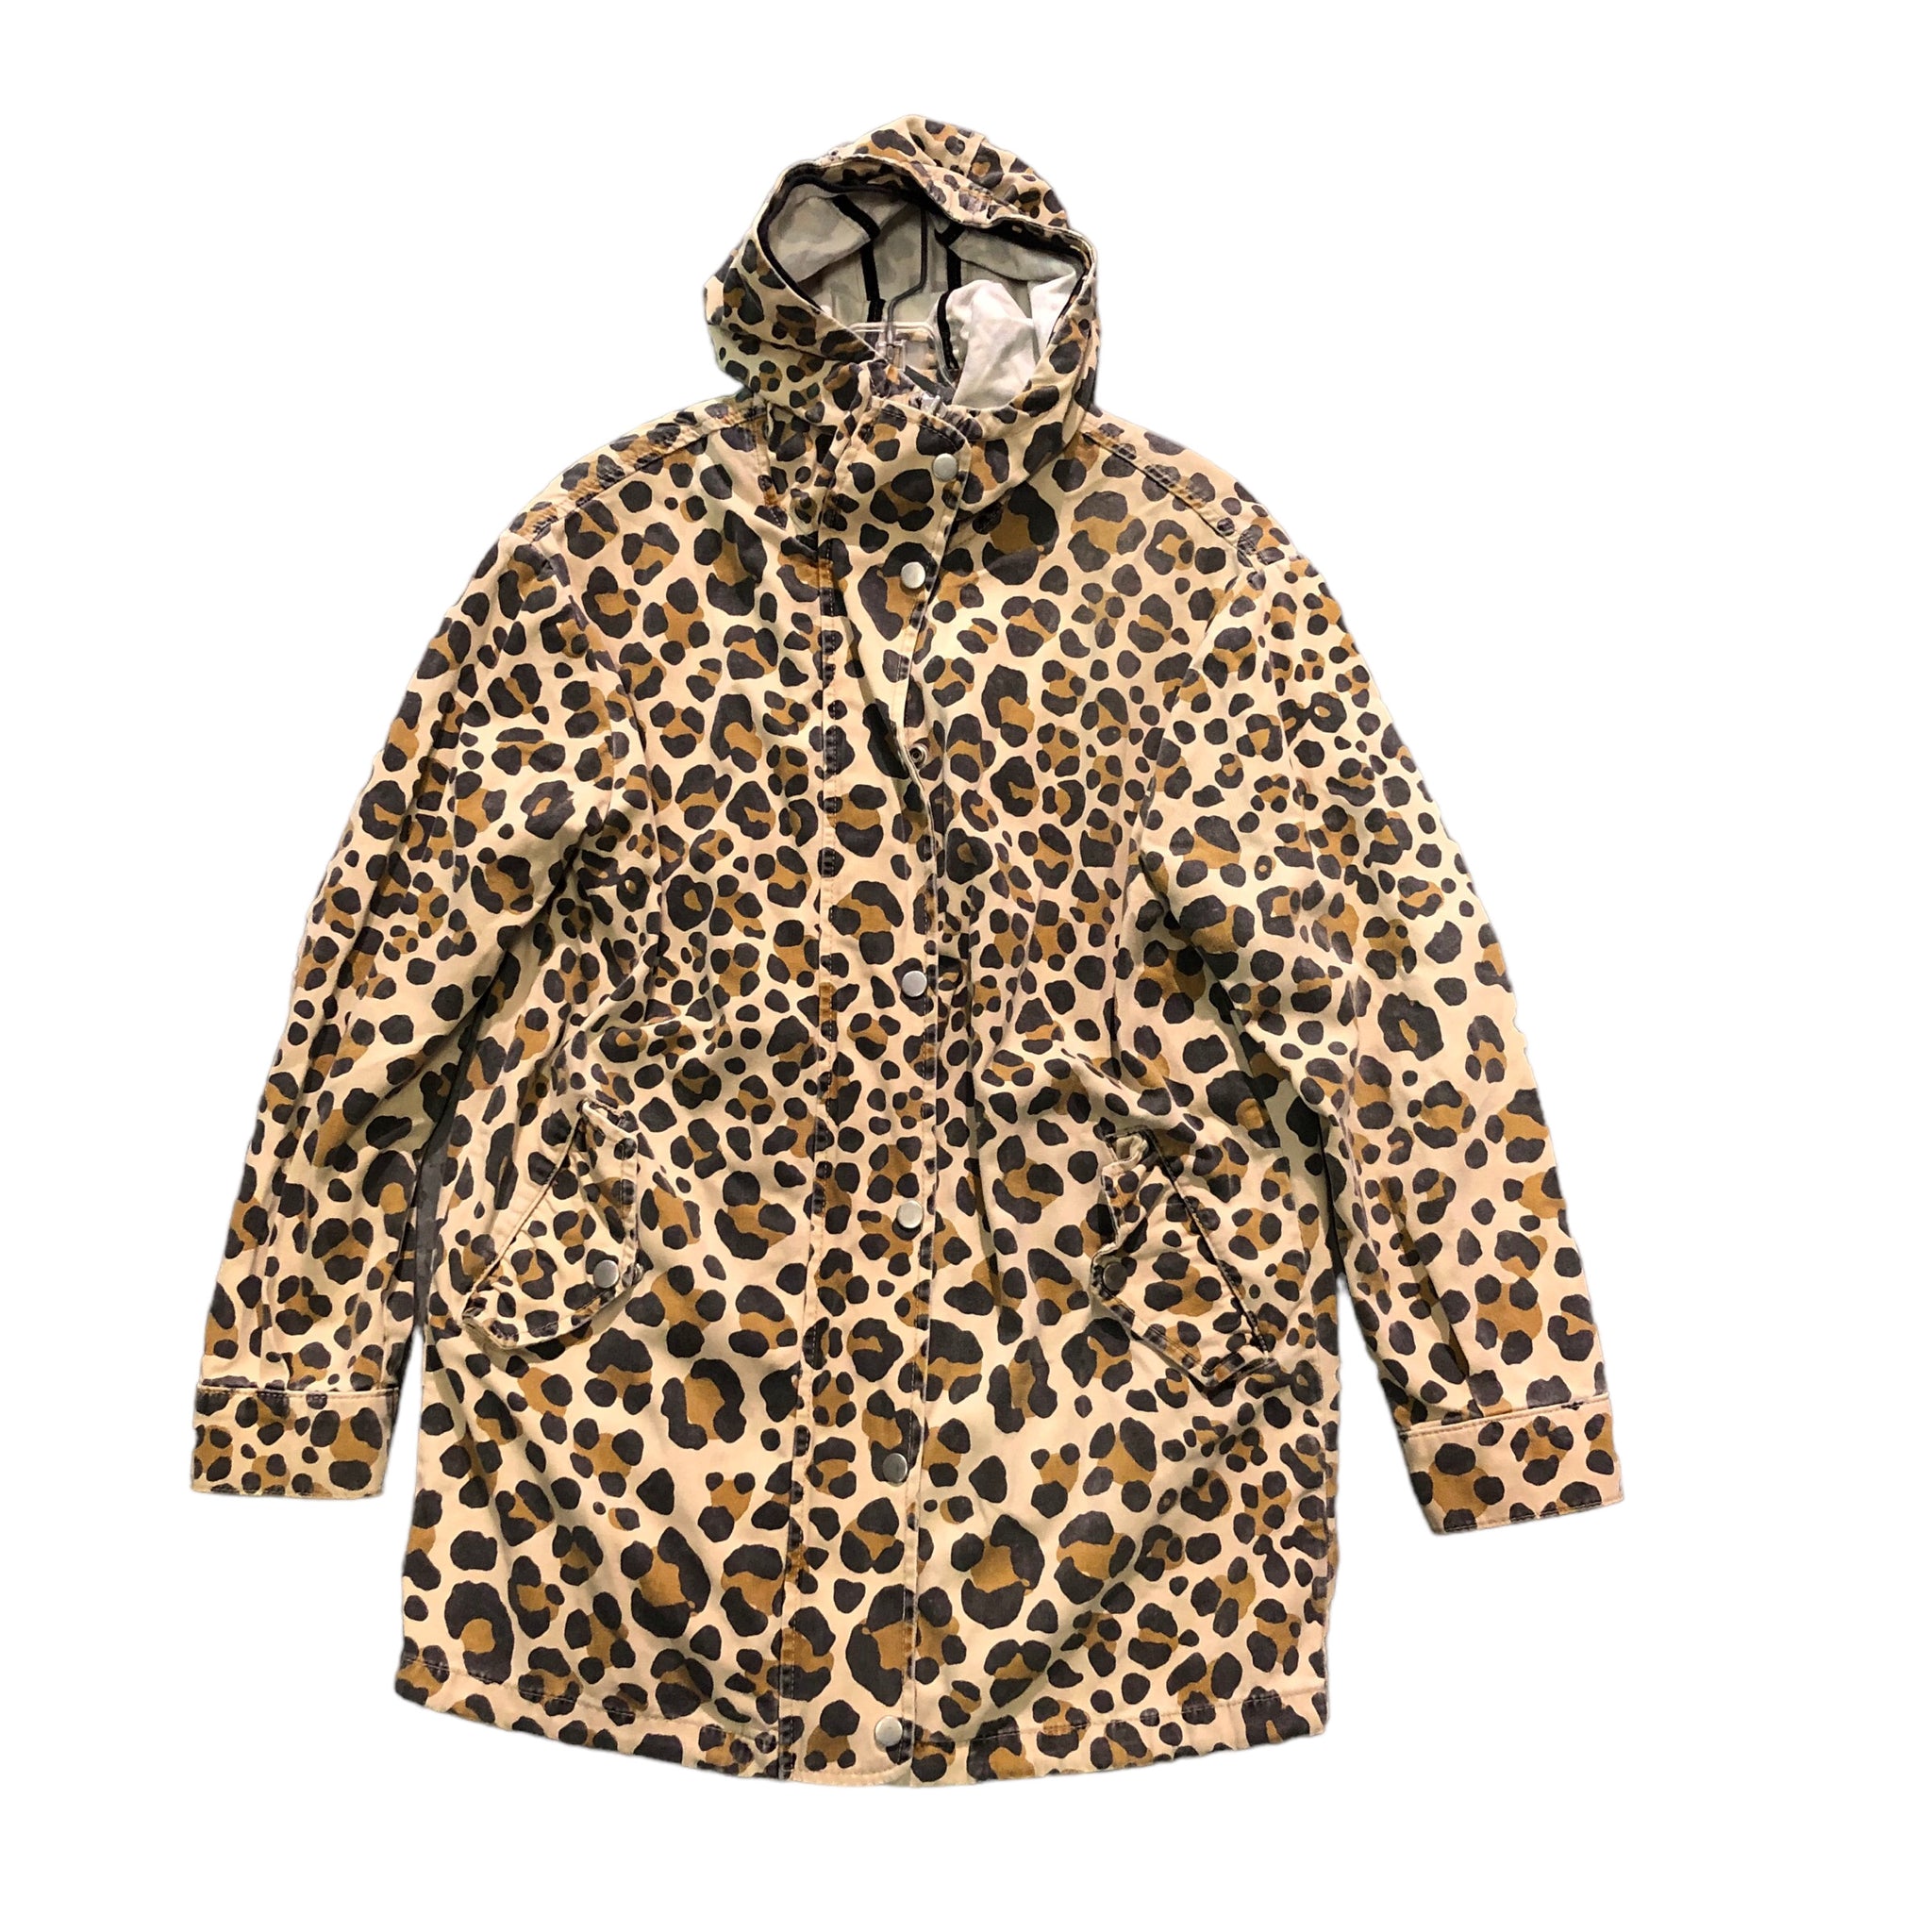 Vintage Leopard Print Hoody Jacket